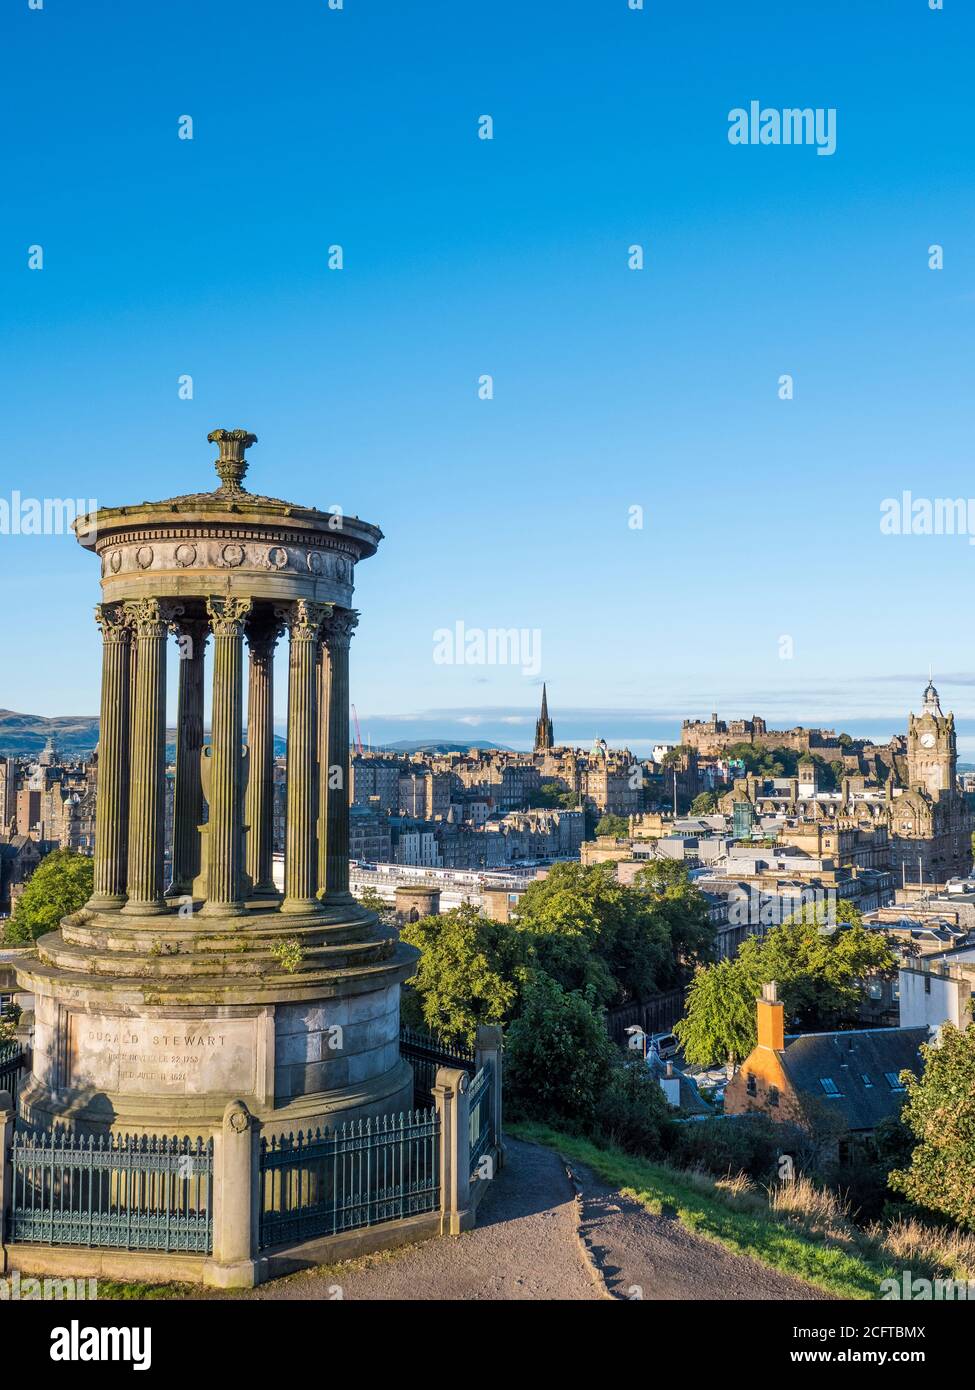 Paisaje de Edimburgo con, Monumento Dugald Stewart, la ciudad de Edimburgo en el fondo con el Hotel Balmoral, Escocia, Reino Unido. Foto de stock